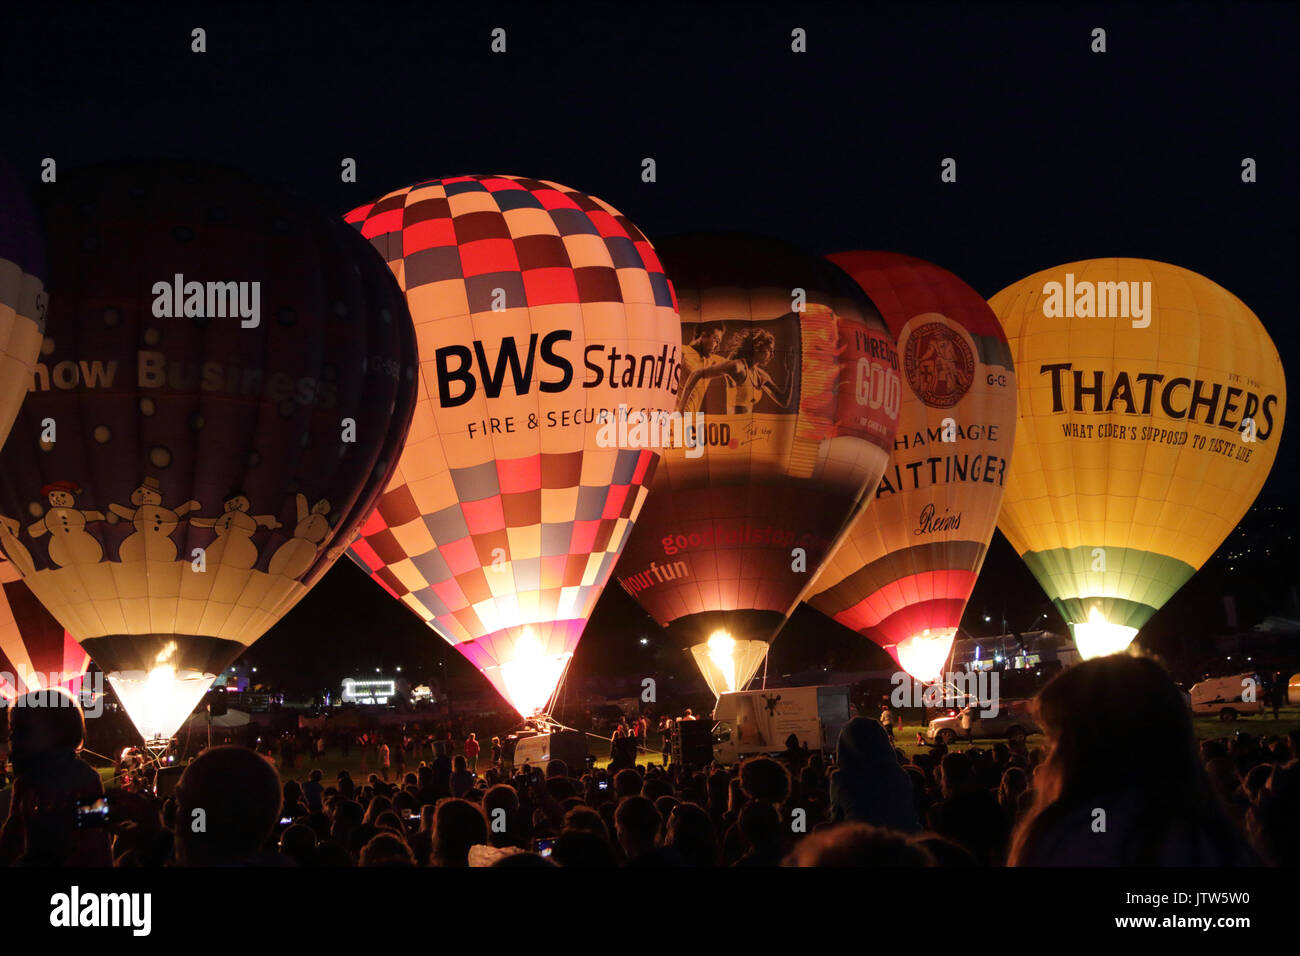 Montgolfières à Bristol International Balloon Fiesta, tenue à Ashton Cour, Bristol, UK, 10 août 2017. Les ballons sont en hausse pour une nuit Glow, un événement conçu pour être moins dépendante du temps, et dans lequel les ballons restent au sol en tant que groupe et de la lumière jusqu'à l'aide de leurs torchères de gaz à temps pour la musique. Banque D'Images